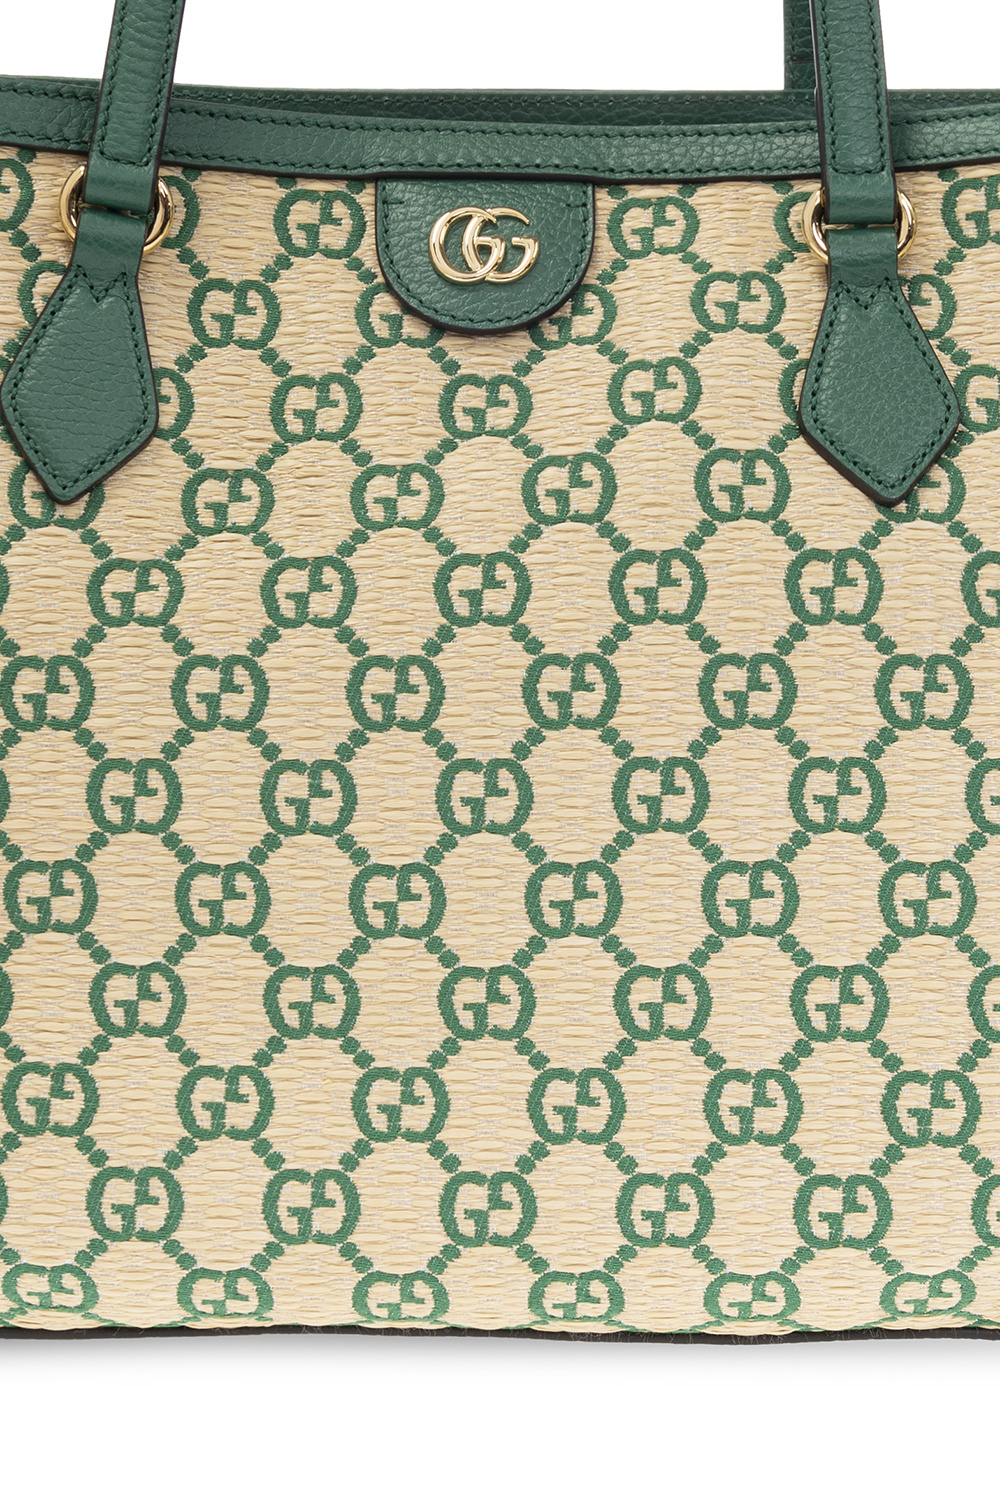 Buy Gucci Ophidia Medium GG Tote Bag 'Green GG Straw Effect' - 631685 2Y4EG  8965